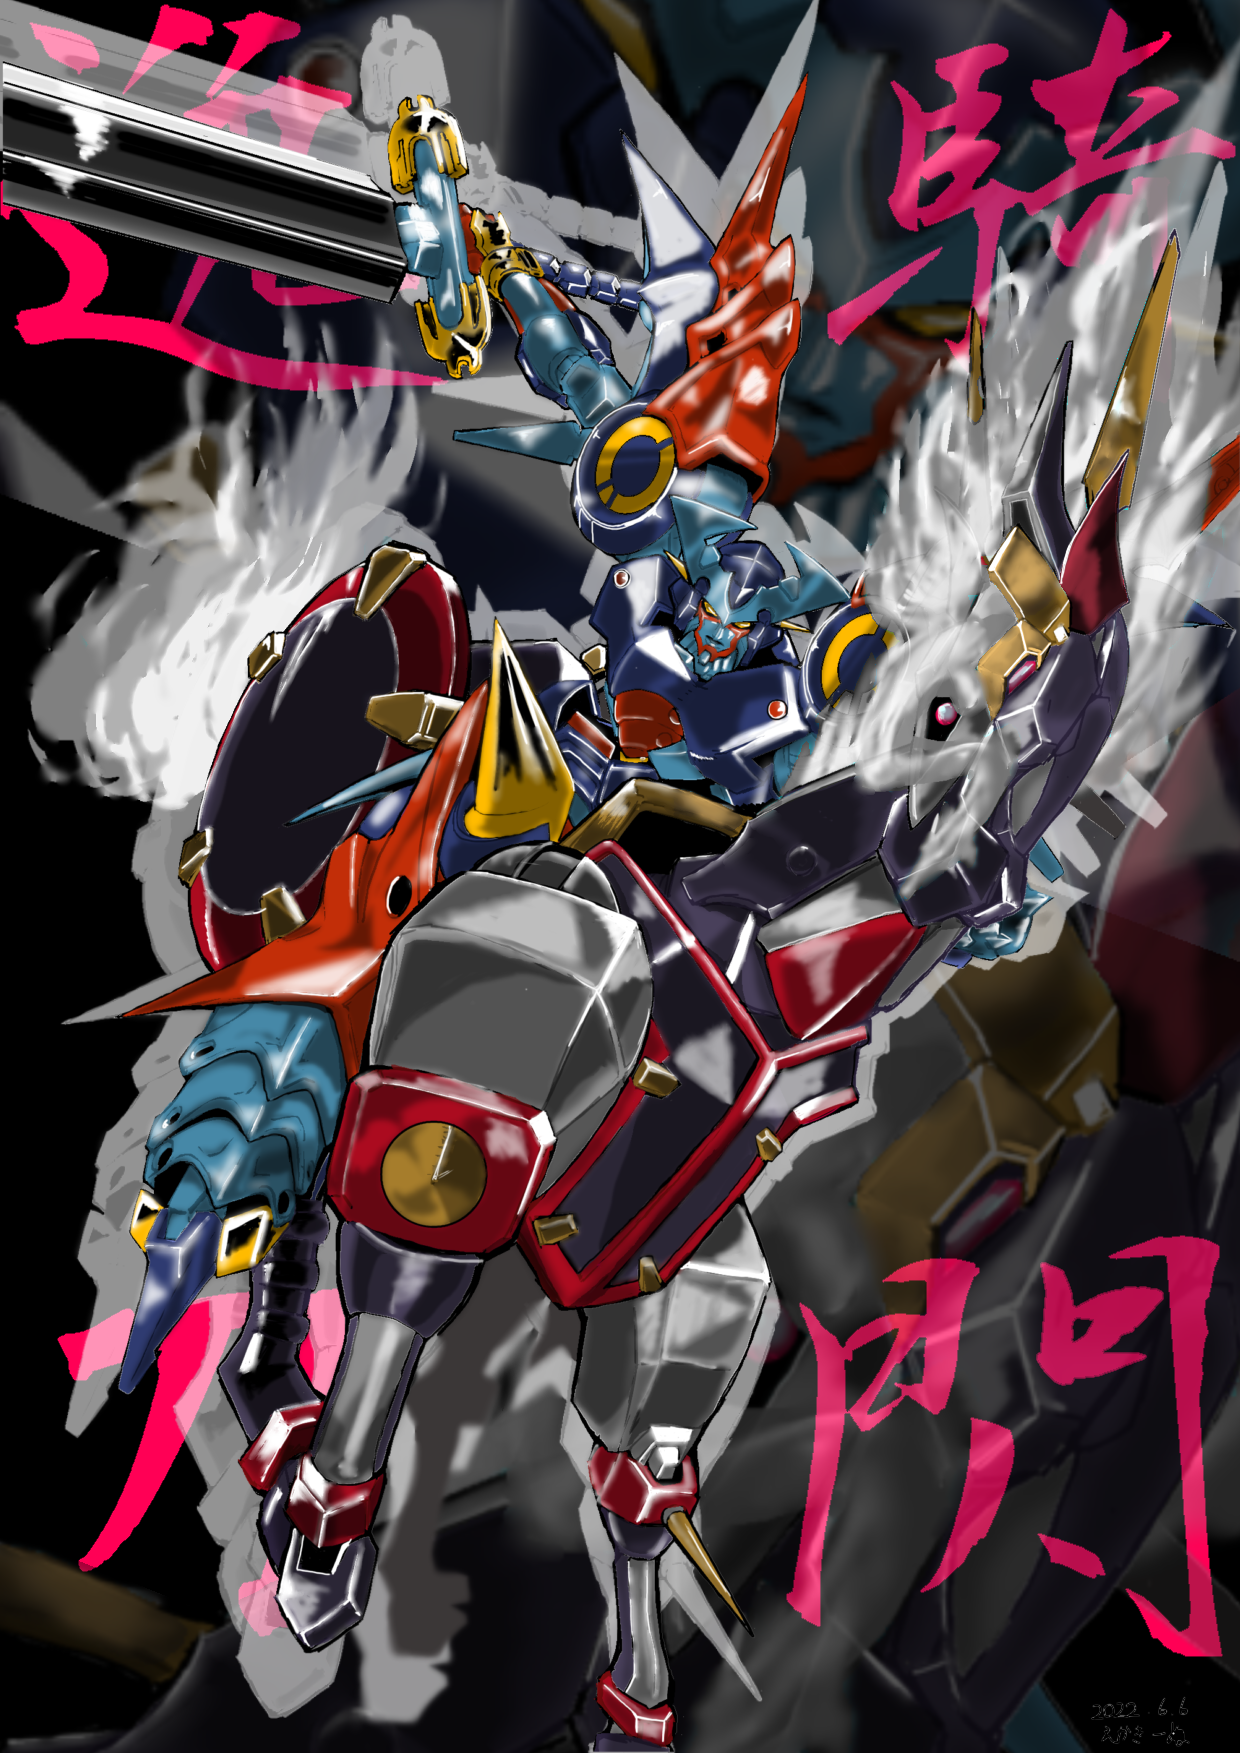 Anime 1240x1753 anime mechs Super Robot Taisen artwork digital art fan art Dygenguar Aussenseiter